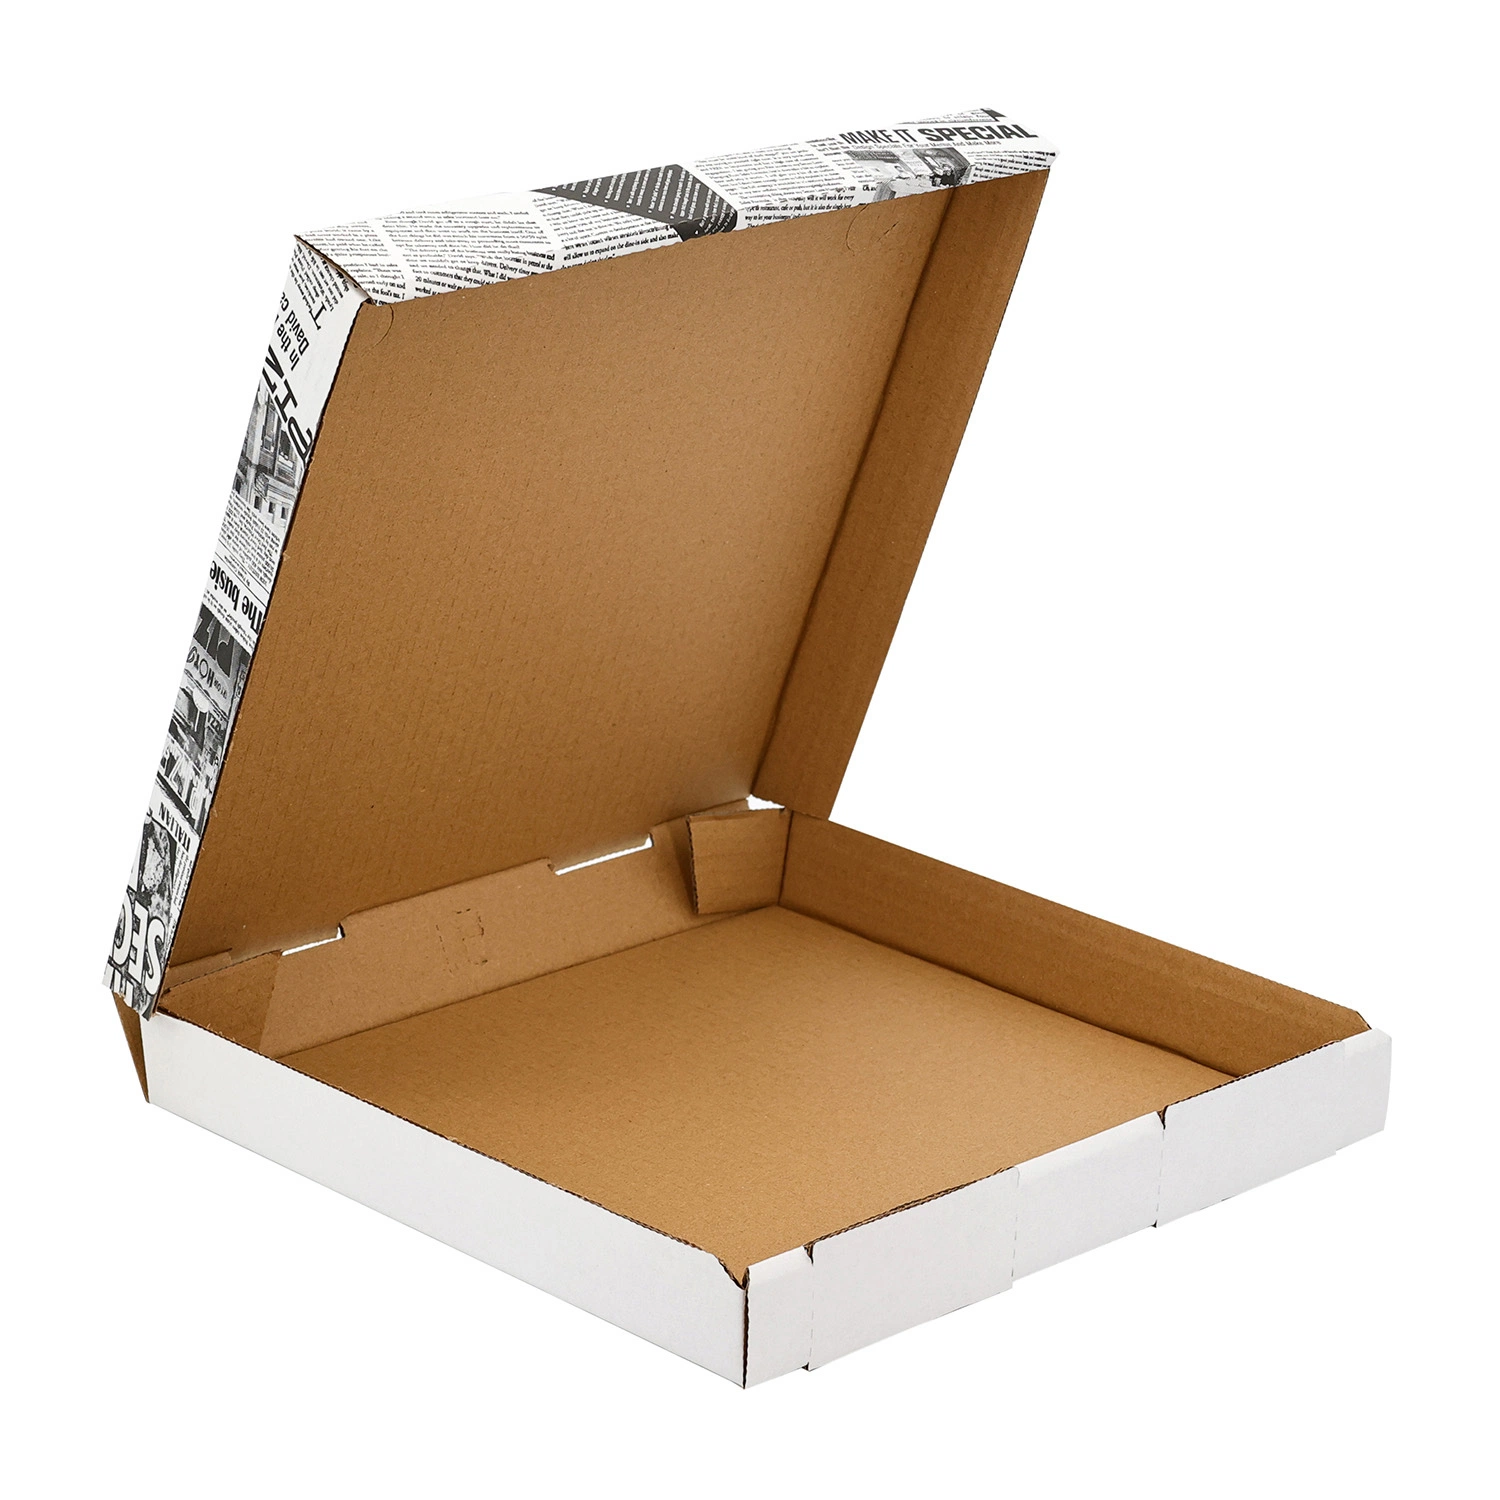 Custom печатной бумаги треугольника пицца ящики упаковка